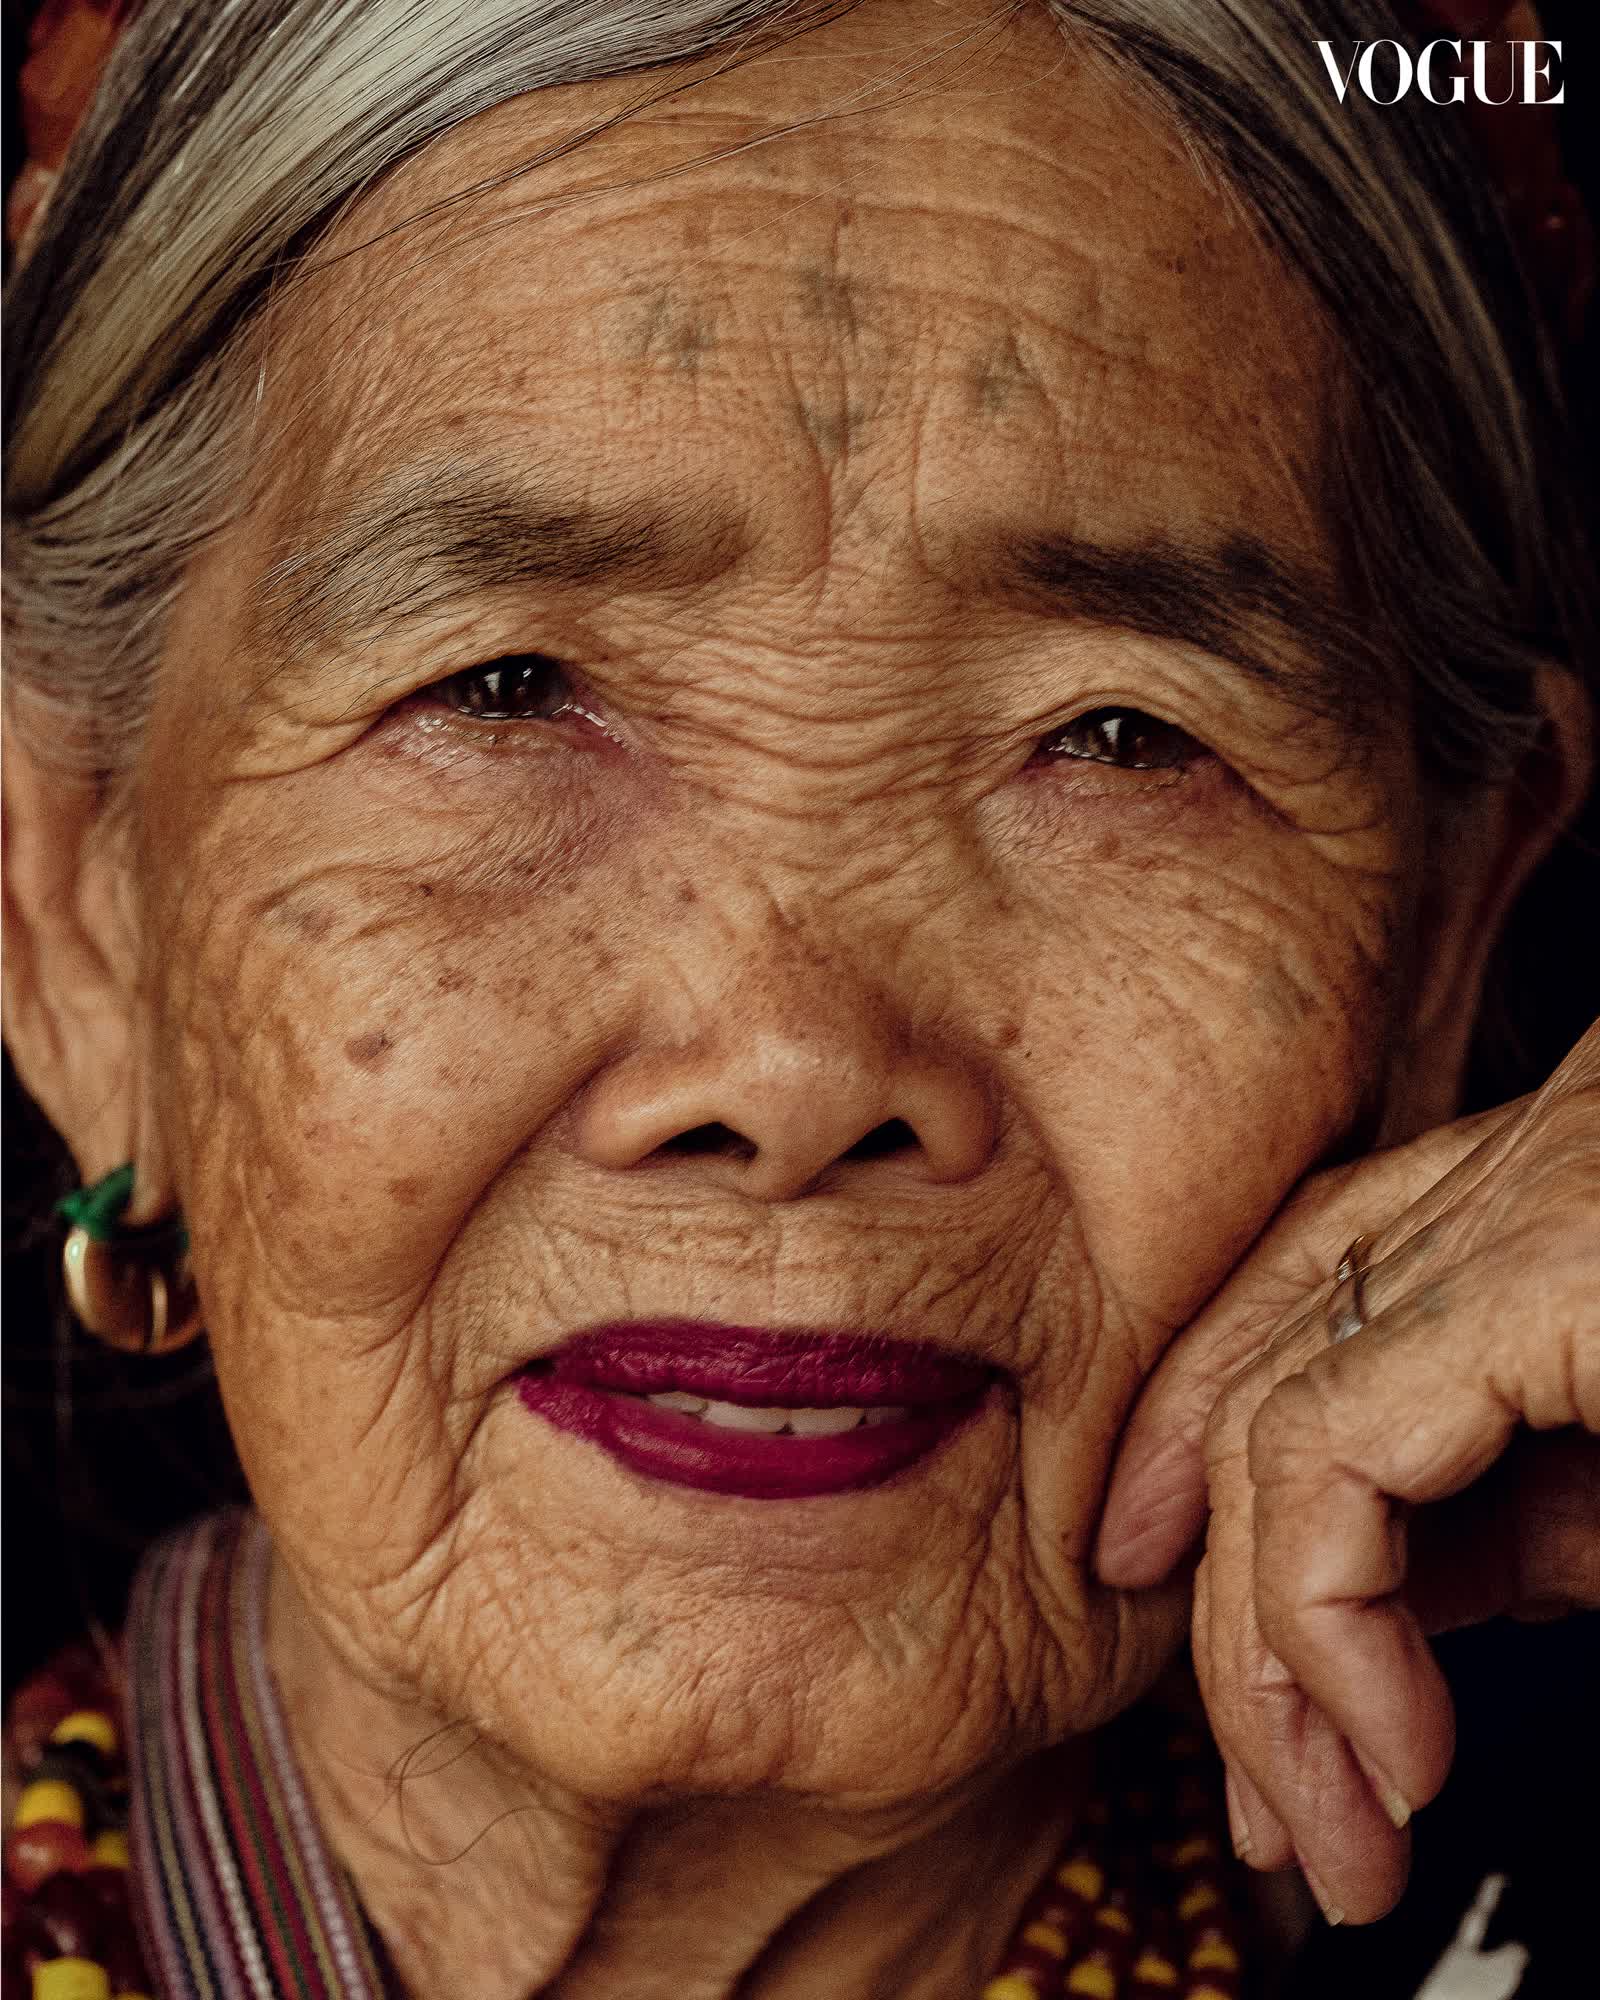 Nghệ nhân xăm mình 106 tuổi trên trang bìa tạp chí Vogue: Bí quyết sống thọ xoay quanh những điều đơn giản đến không ngờ - Ảnh 2.